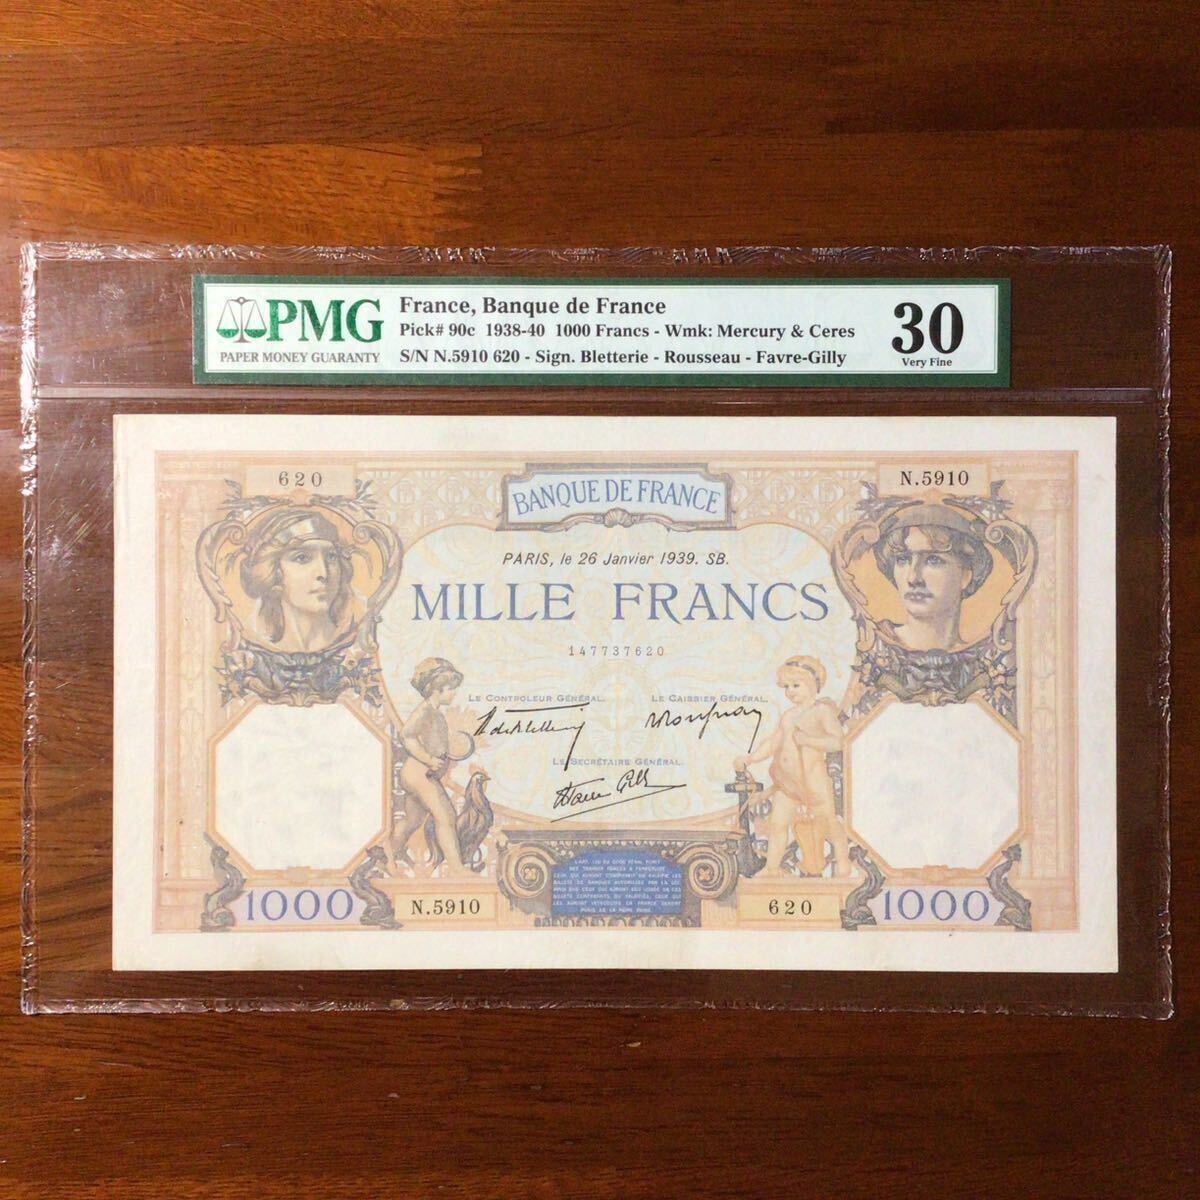 World Banknote Grading FRANCE《Banque de France》1000 Francs【1939】『PMG Grading Very Fine 30』_画像1